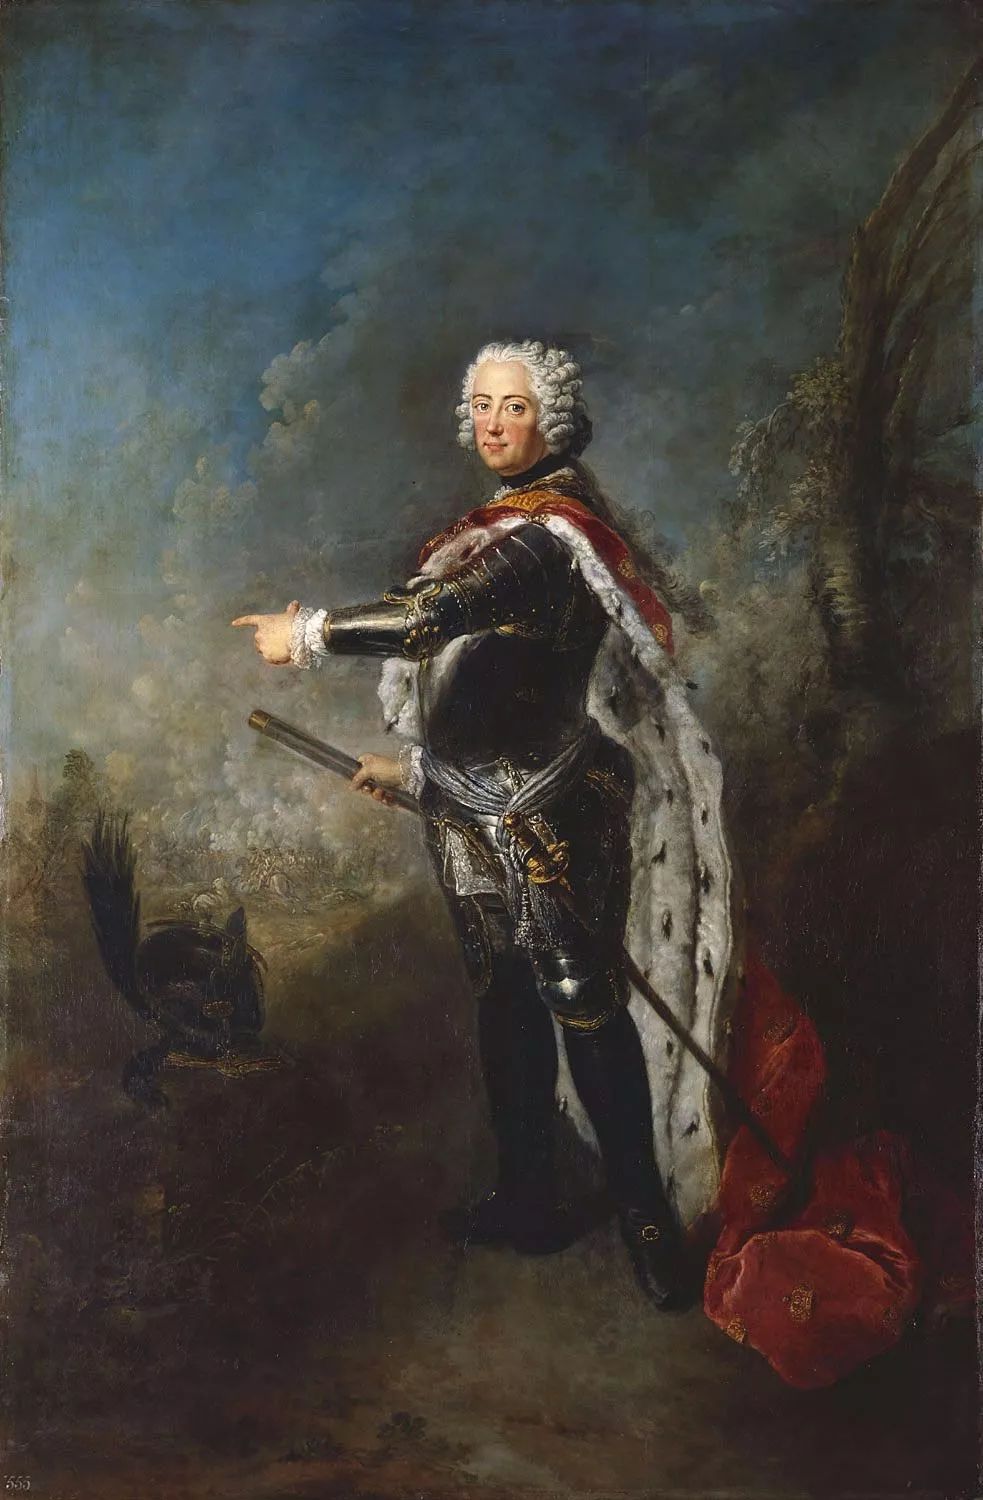 腓特烈大帝(腓特烈二世)于1740年继承王位,当时神圣罗马帝国皇帝查理